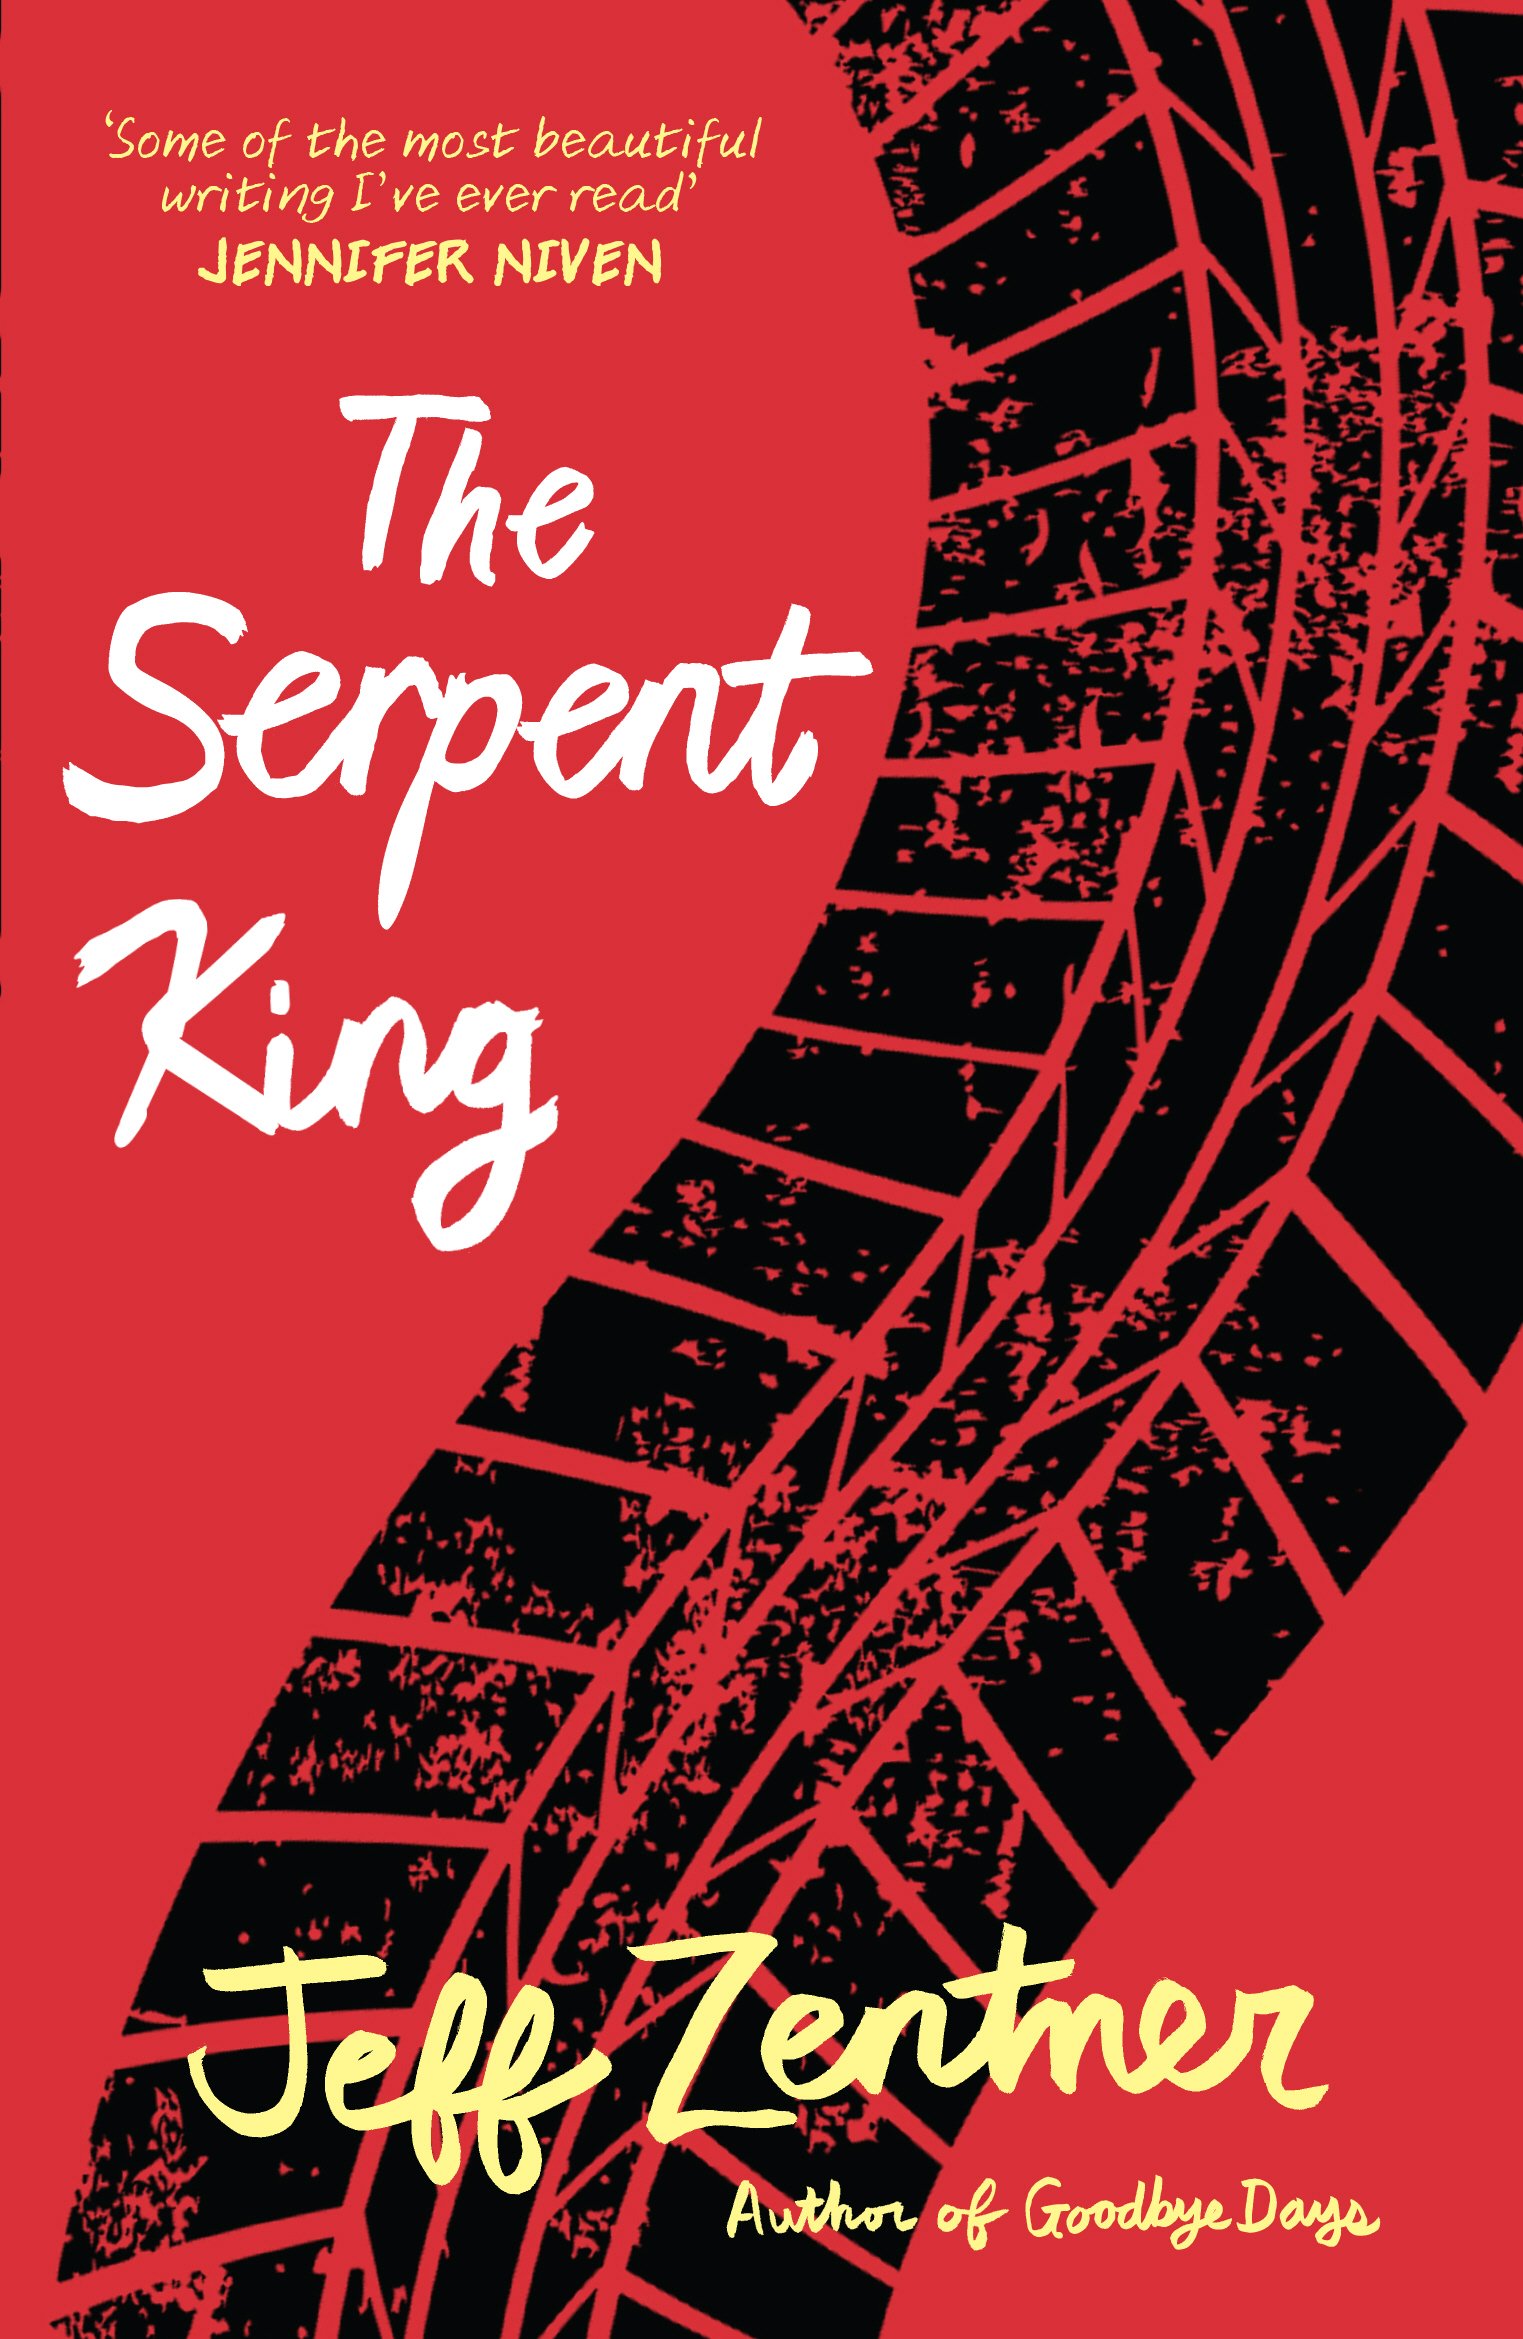 The Serpent King | Jeff Zentner